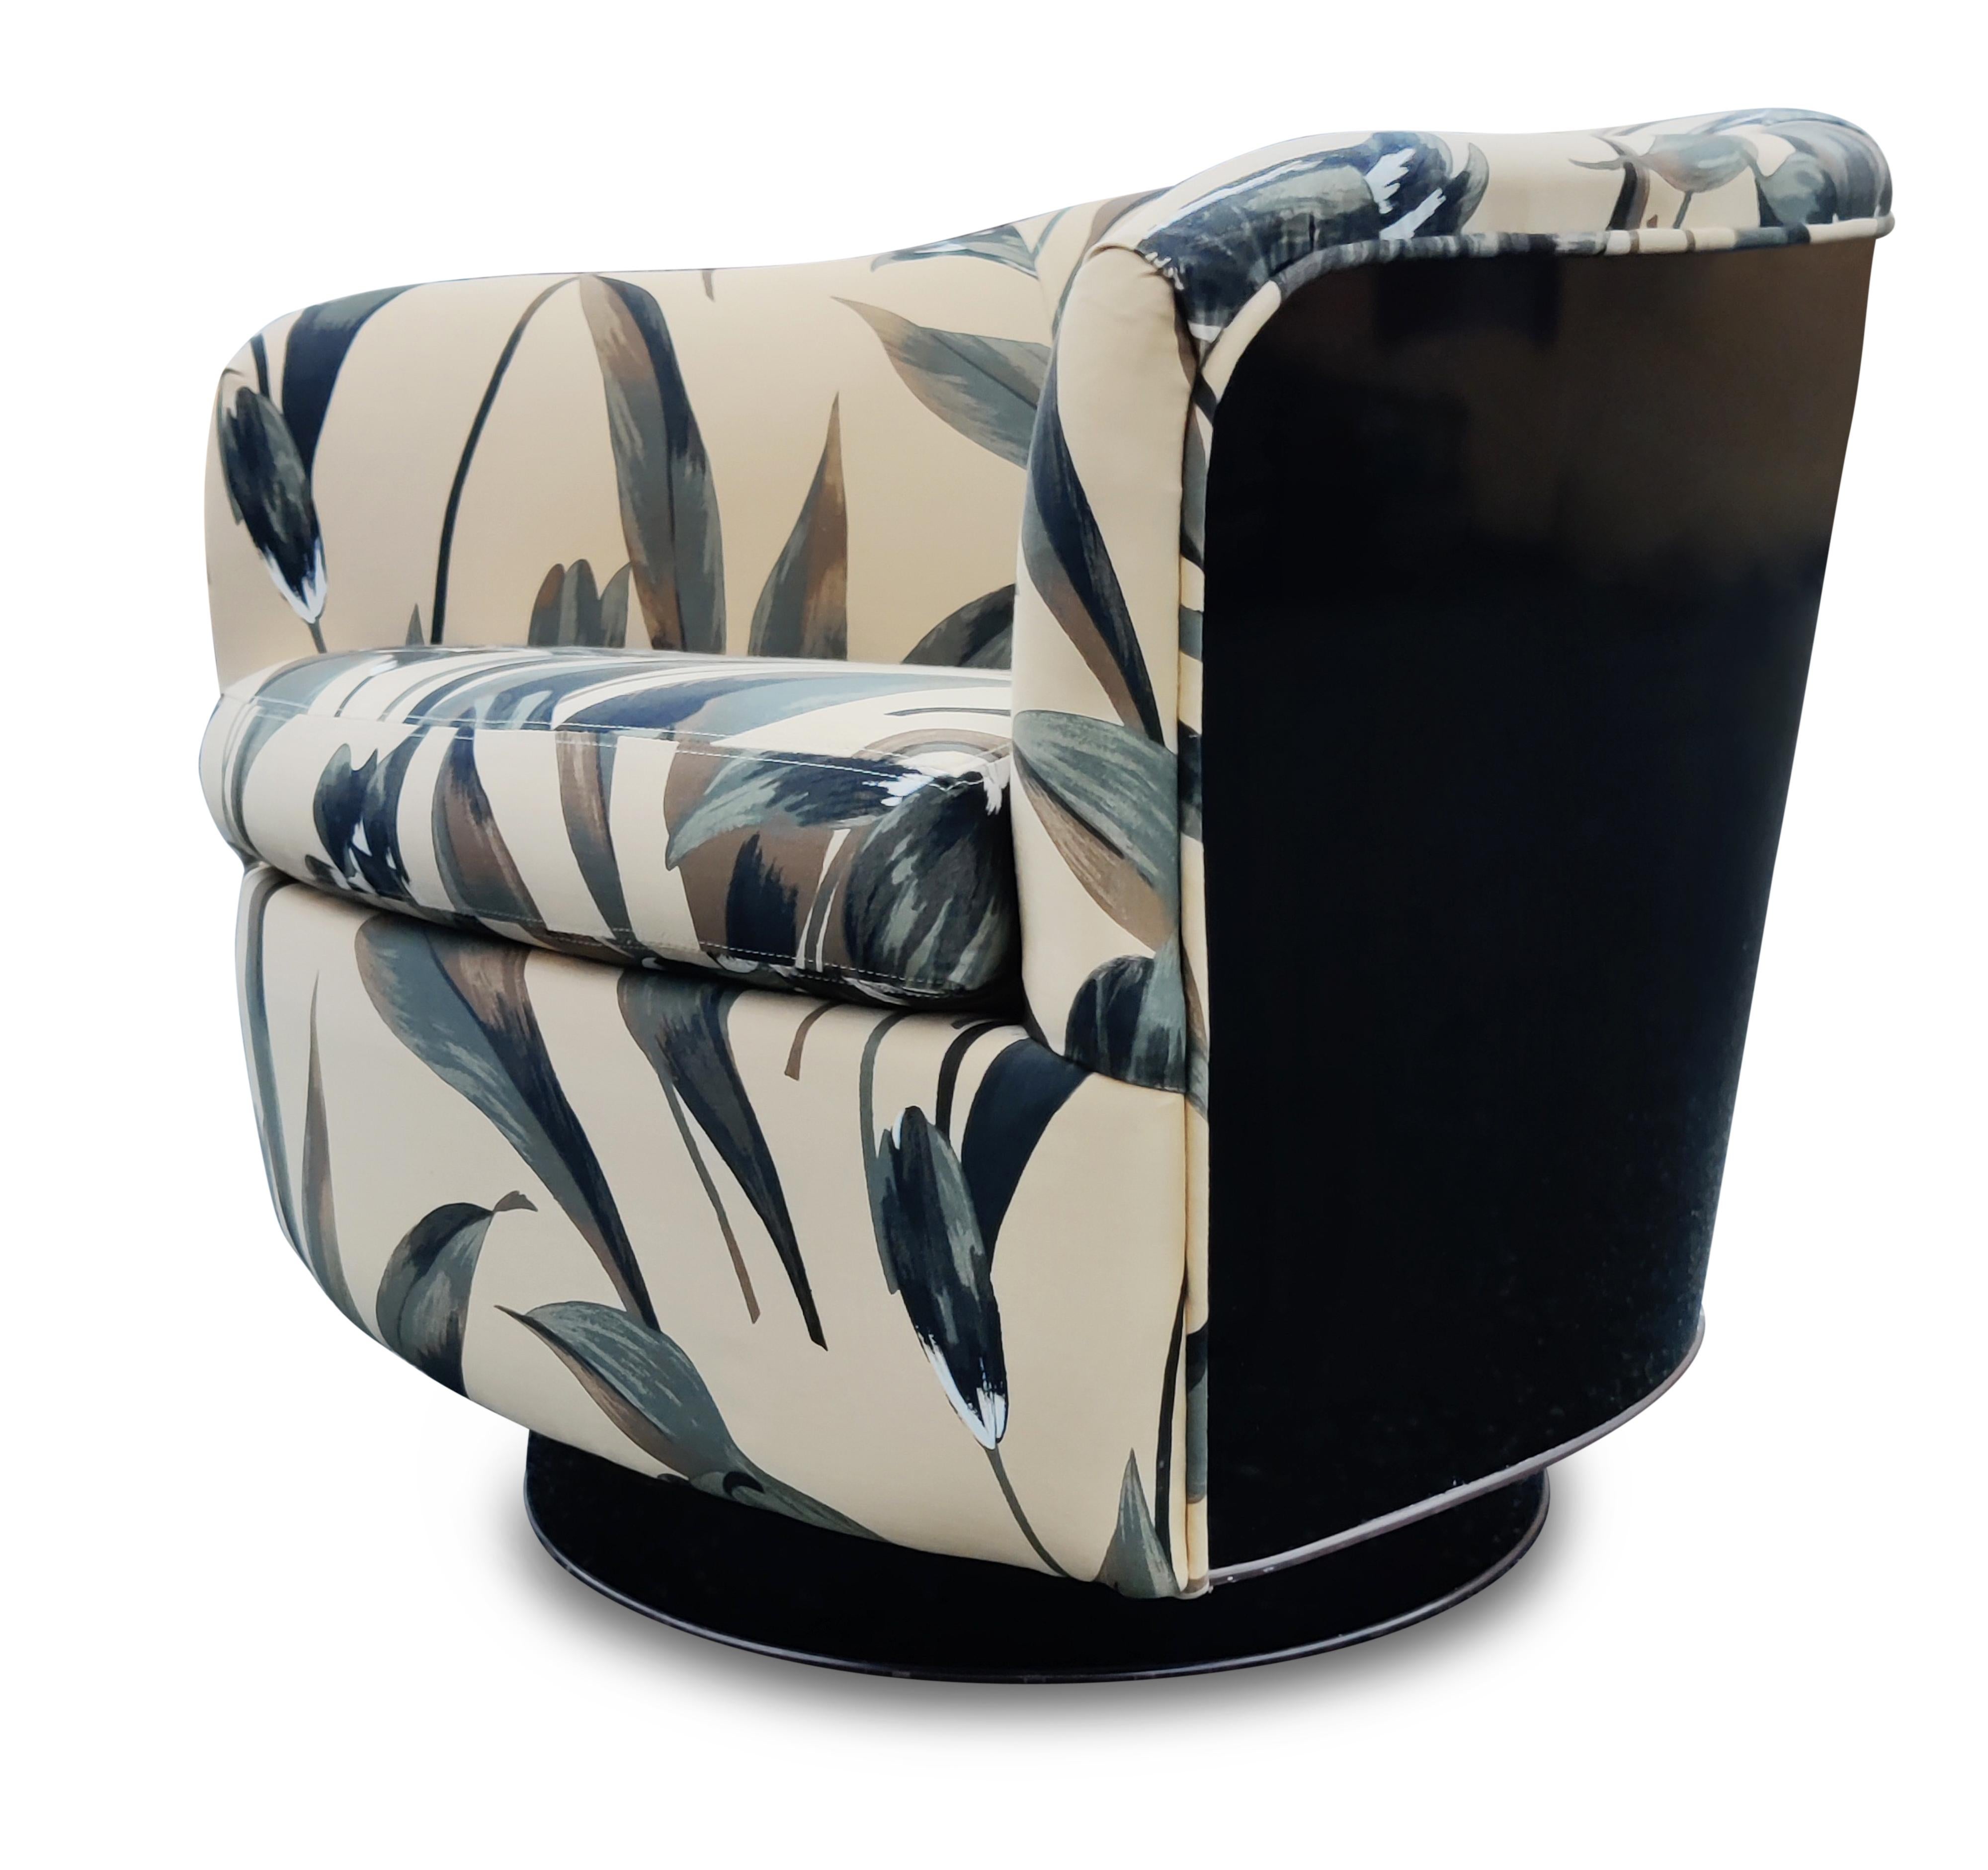 Conçu par Milo Baughman pour Thayer Coggin, ce fauteuil sexy est un modèle absolument emblématique. Le dos en stratifié noir brillant est propre et brillant et complète très bien le tissu à motifs chauds. Le tout repose sur une base pivotante en